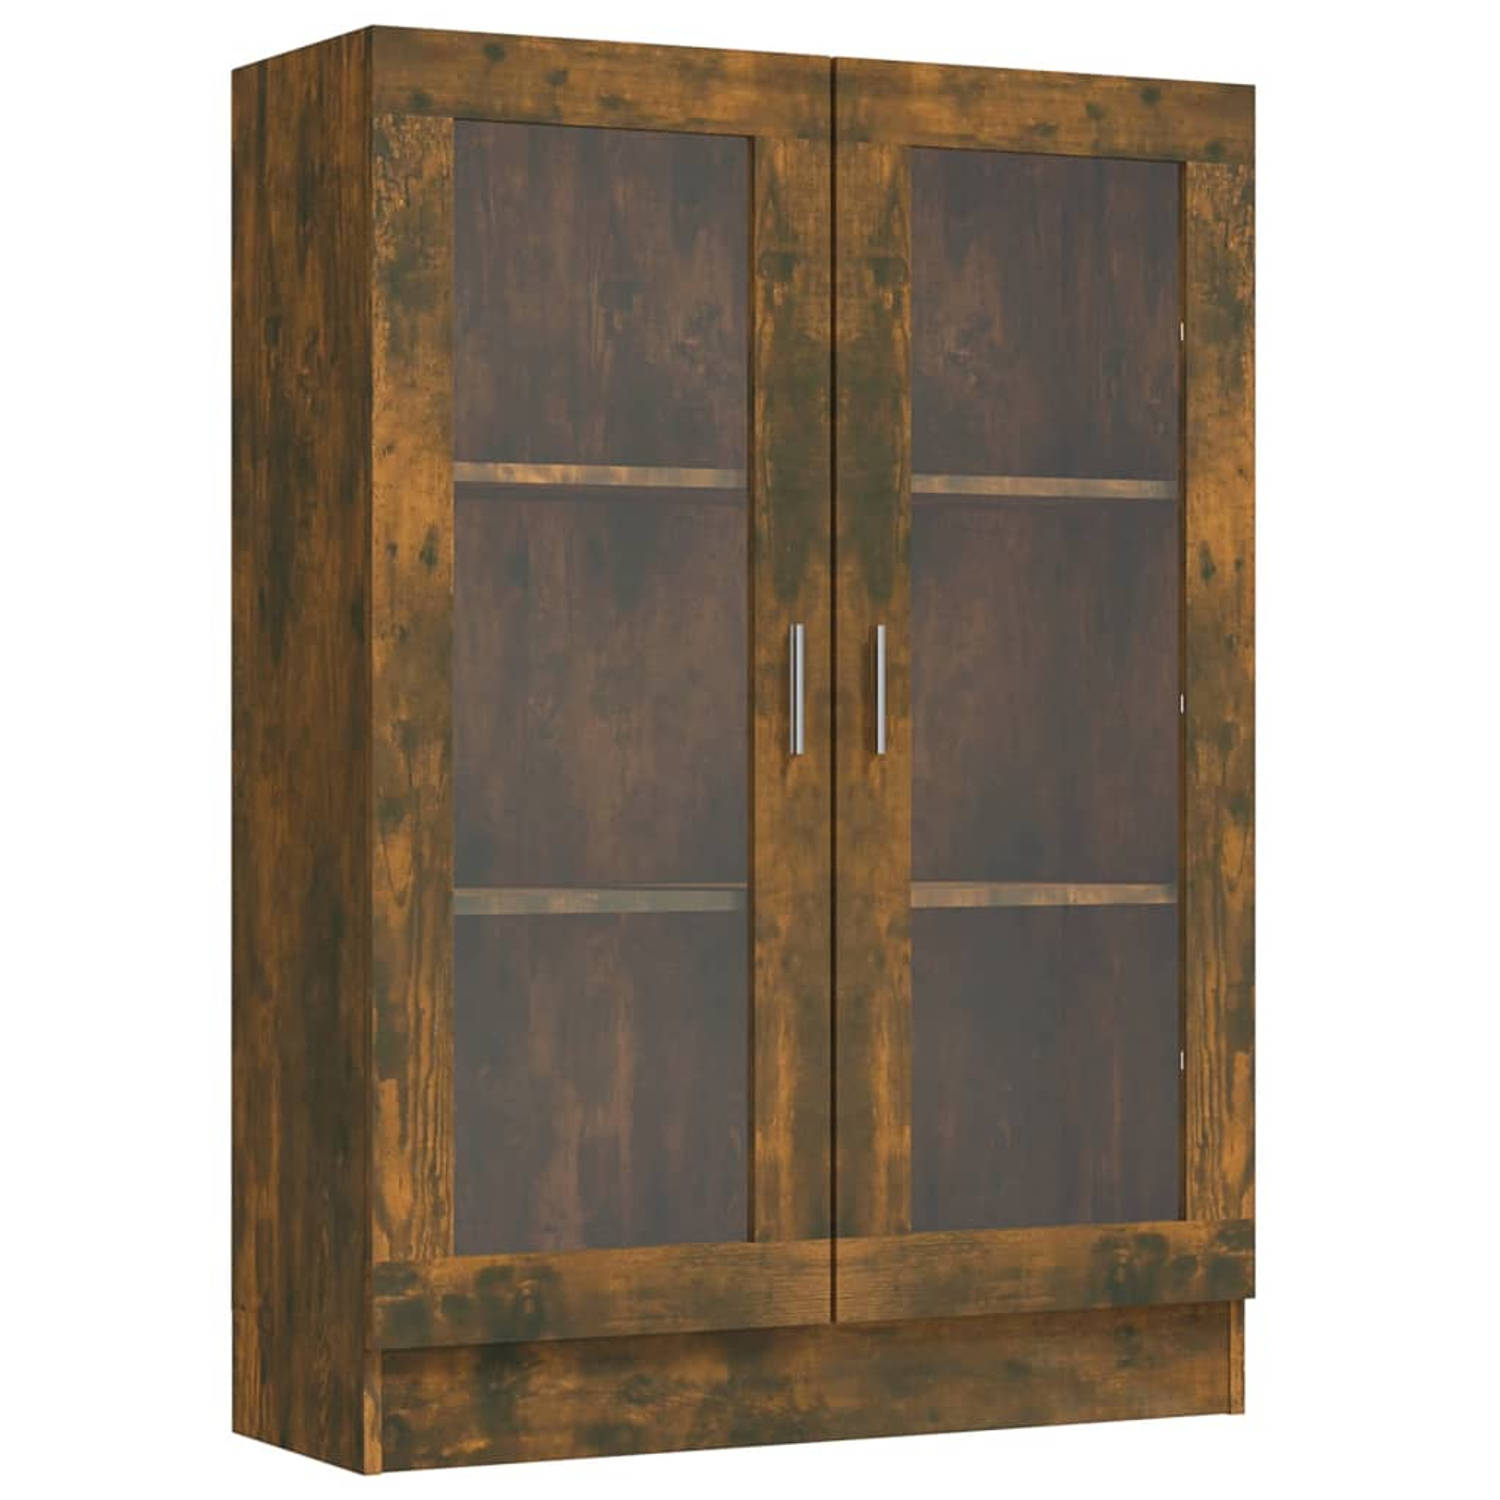 The Living Store Vitrinekast Gerookt eiken hout 82.5 x 30.5 x 115 cm Met 3 vakken en 2 glazen deuren